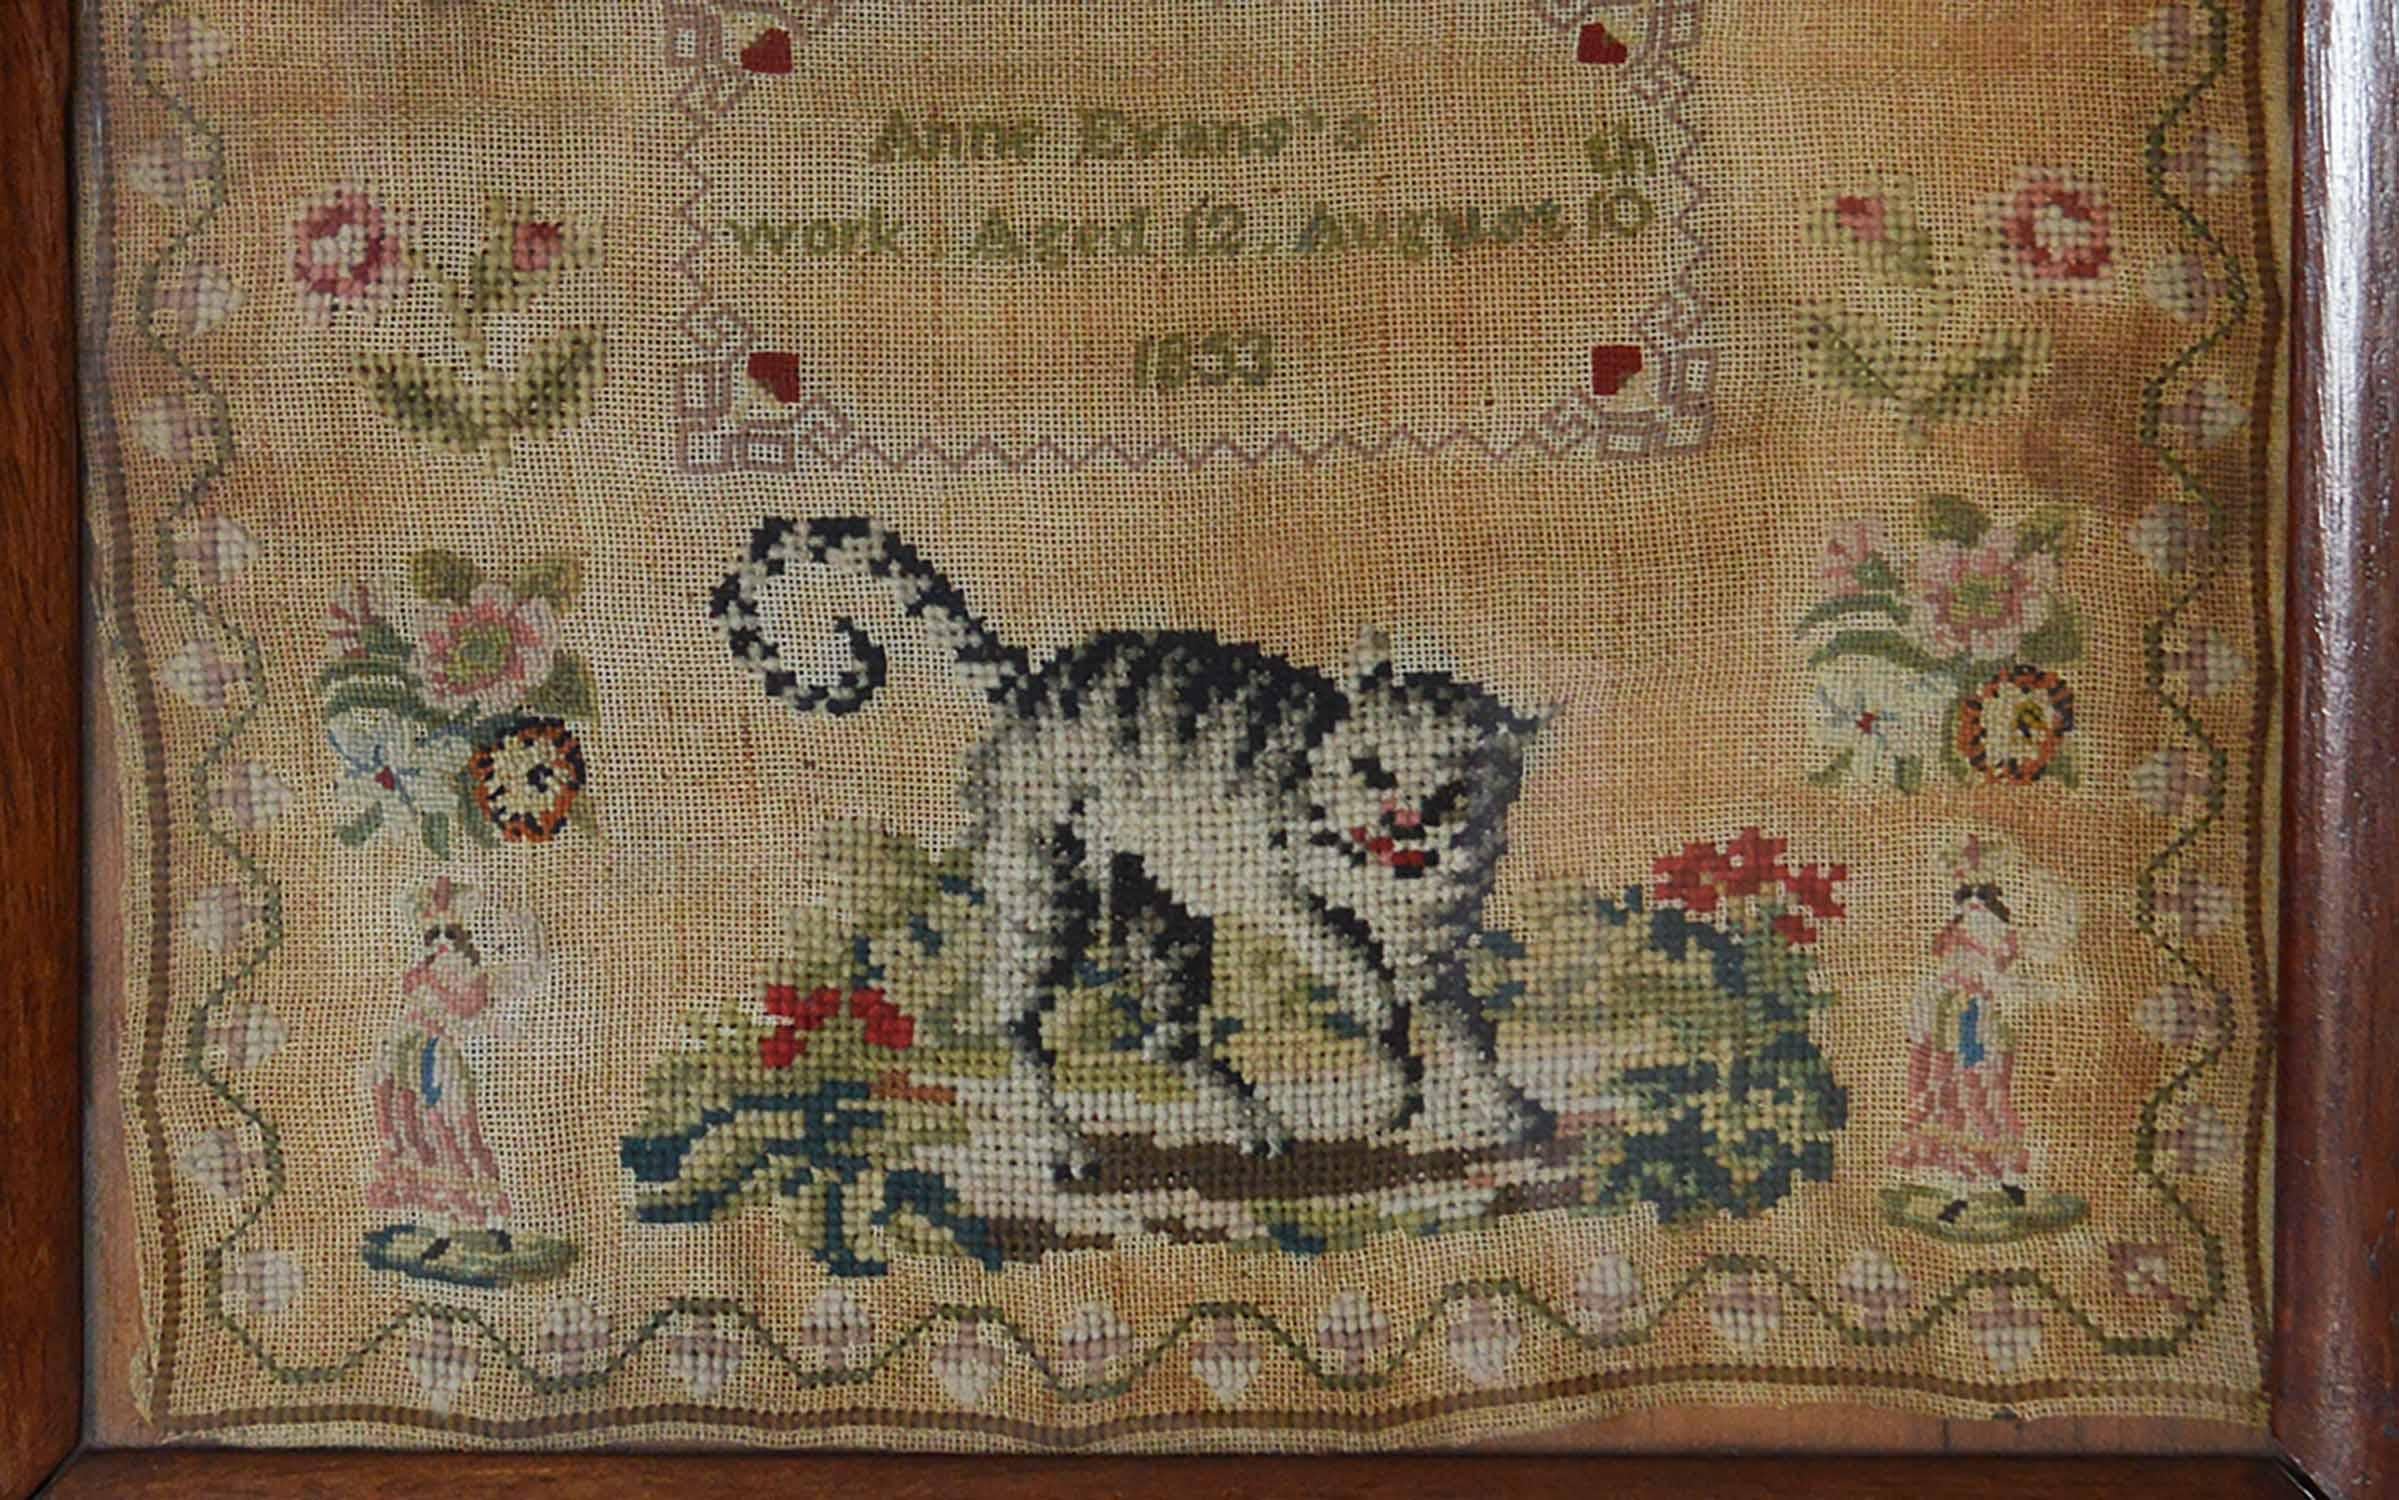 Folk Art Antique Welsh Sampler with a Cat, Anne Evans, 1853